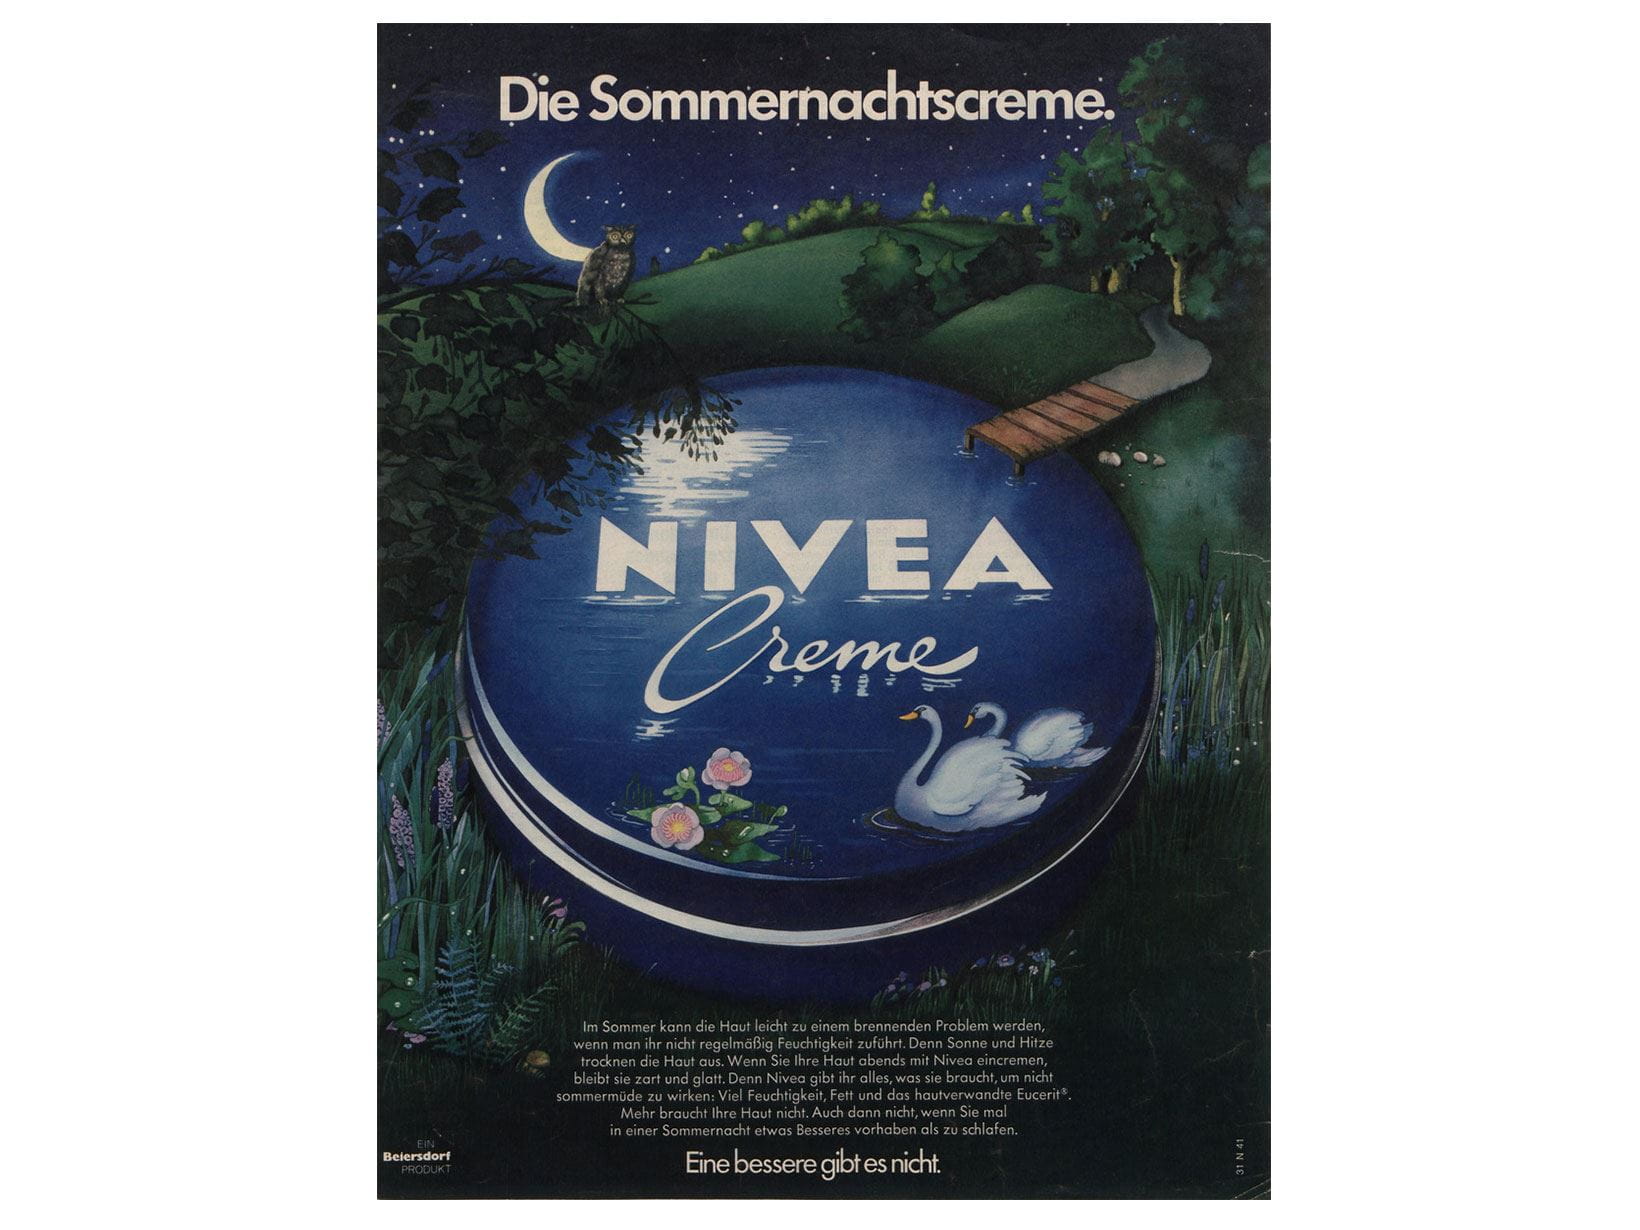 NIVEA Werbeanzeige von 1974: Die Sommernachtscreme.